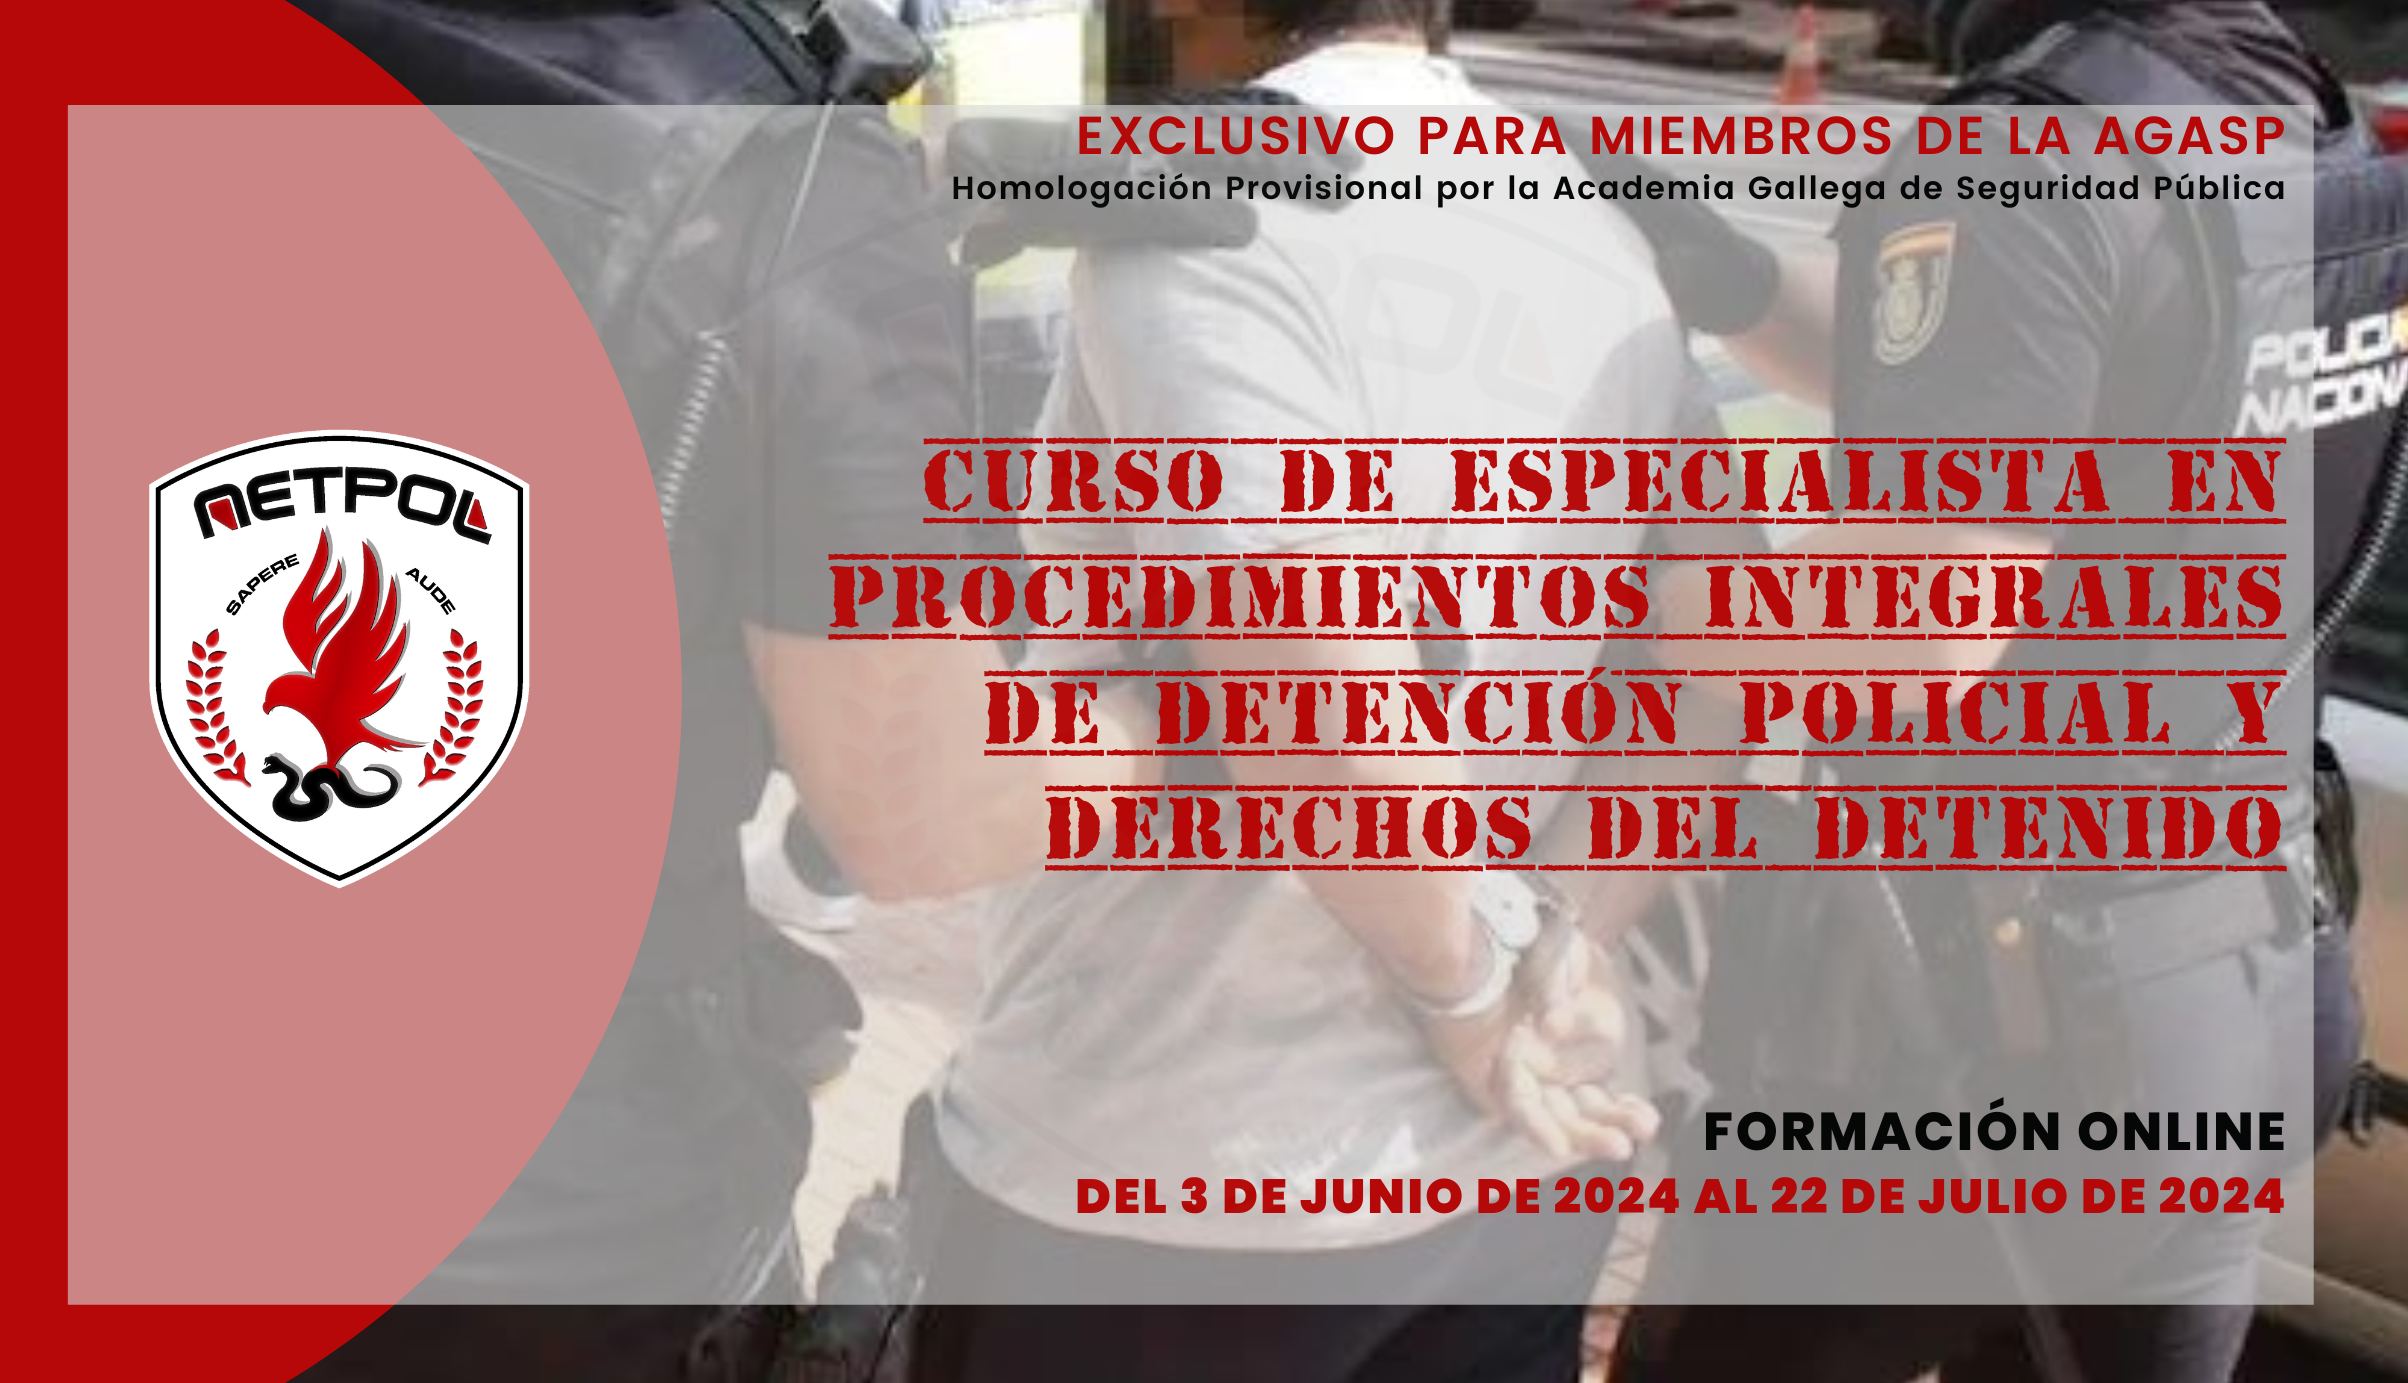 CURSO DE ESPECIALISTA EN PROCEDIMIENTOS INTEGRALES DE DETENCIÓN POLICIAL Y DERECHOS DEL DETENIDO.